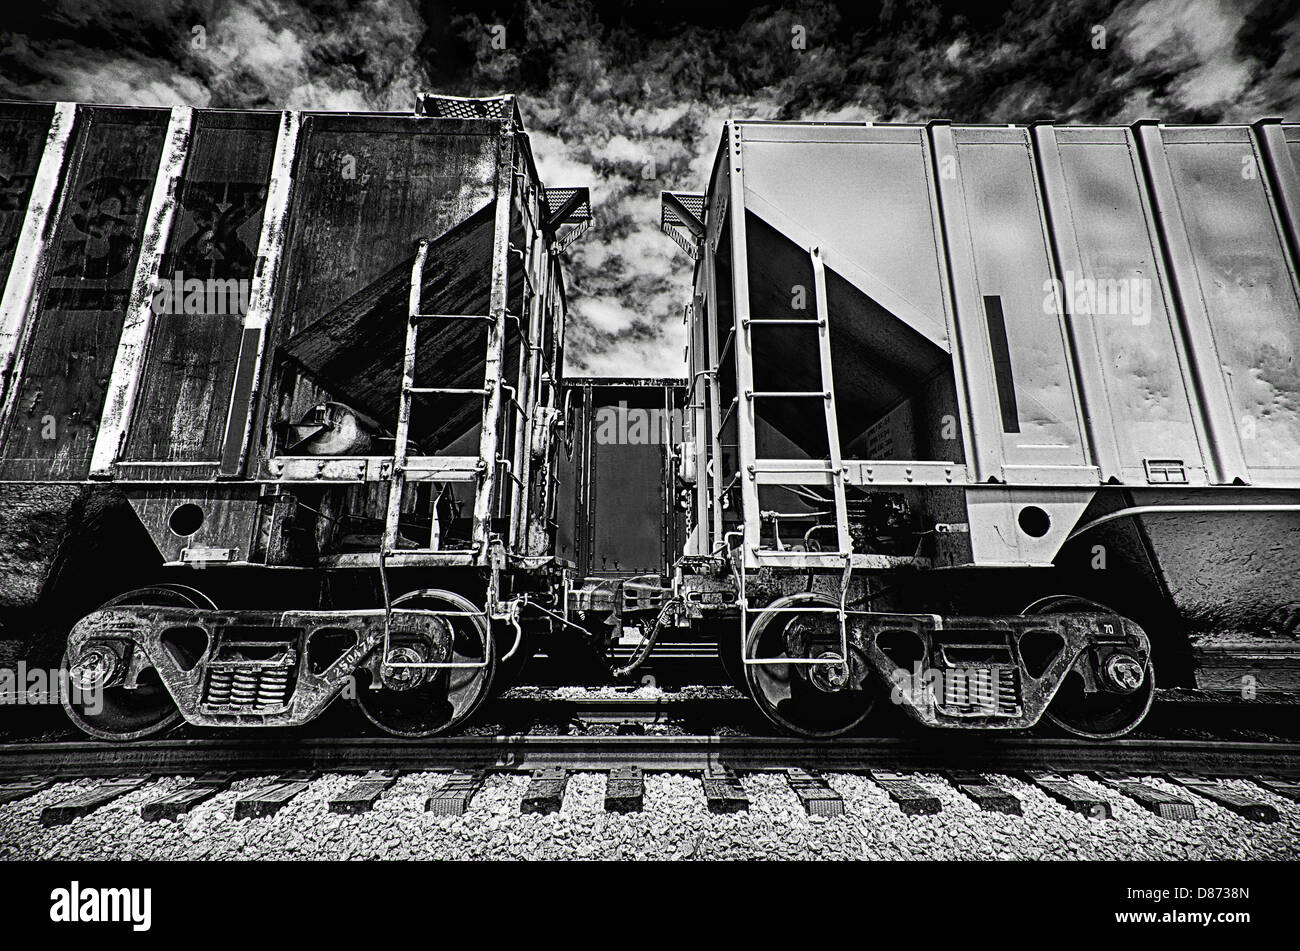 Si tratta di una immagine in bianco e nero di carrozze ferroviarie accoppiamento. Foto Stock